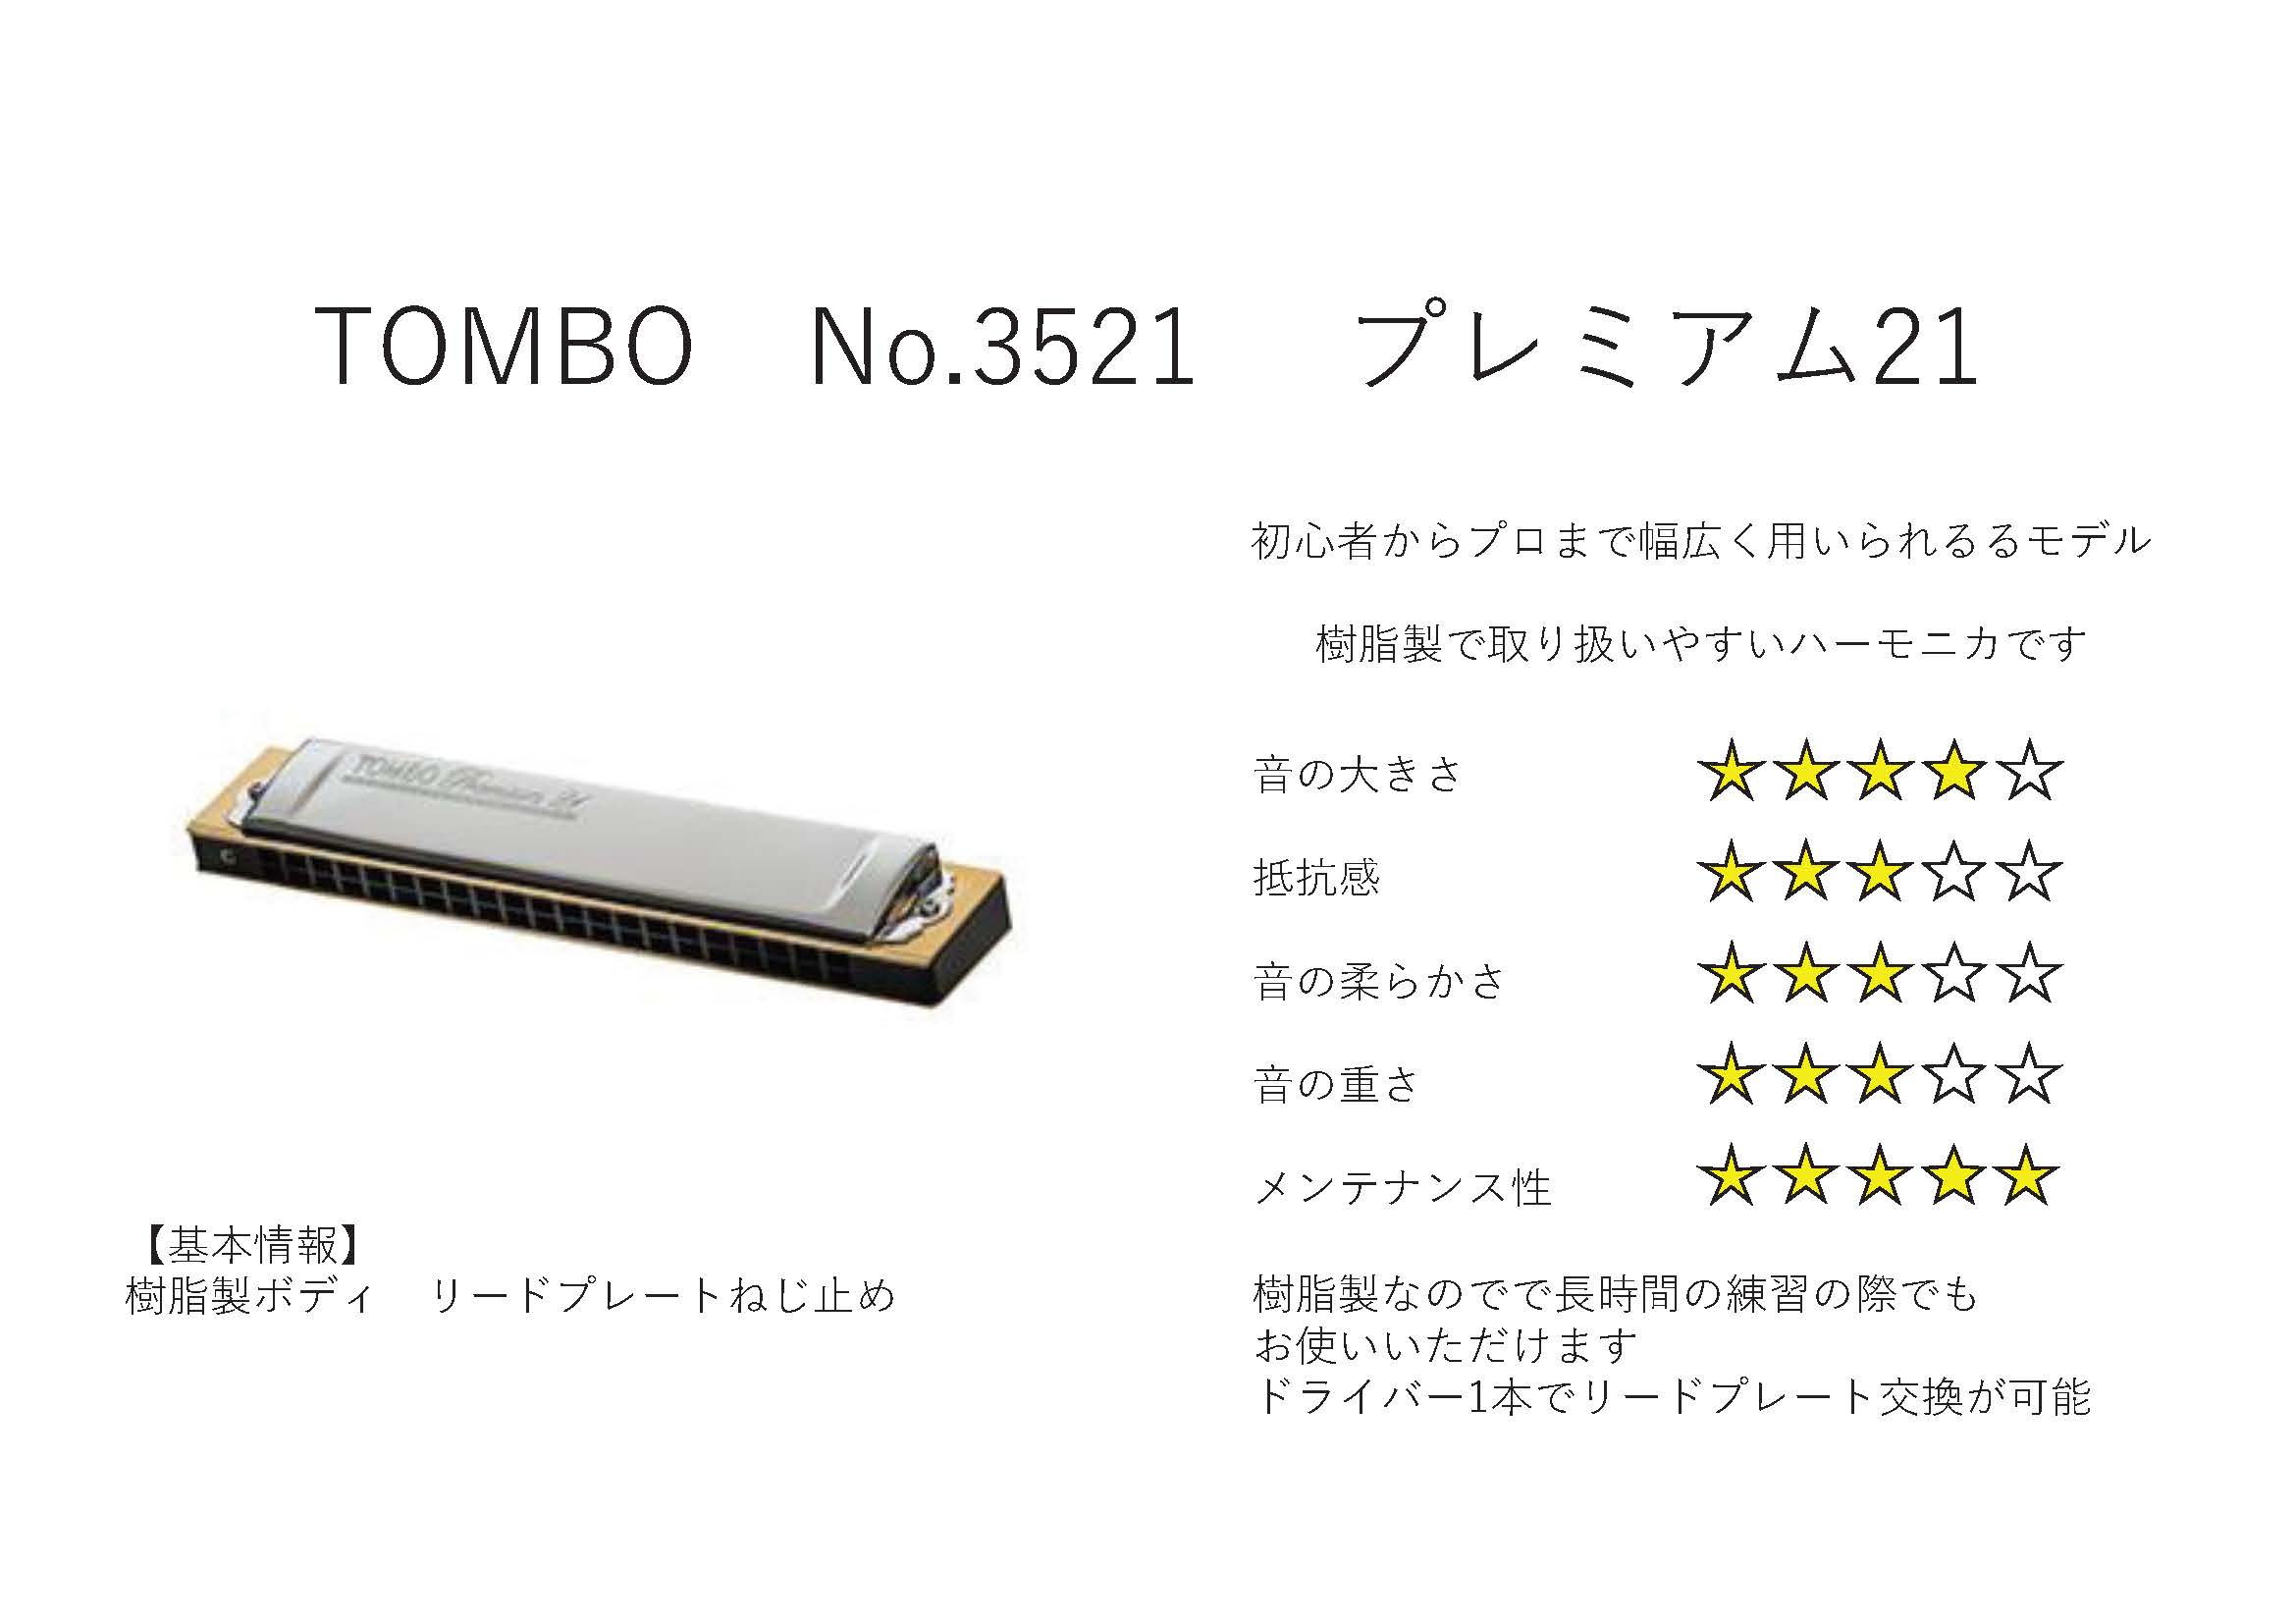 TOMBO No.3521S Premium Classic 【複音ハーモニカ】 / 複音ハーモニカ 